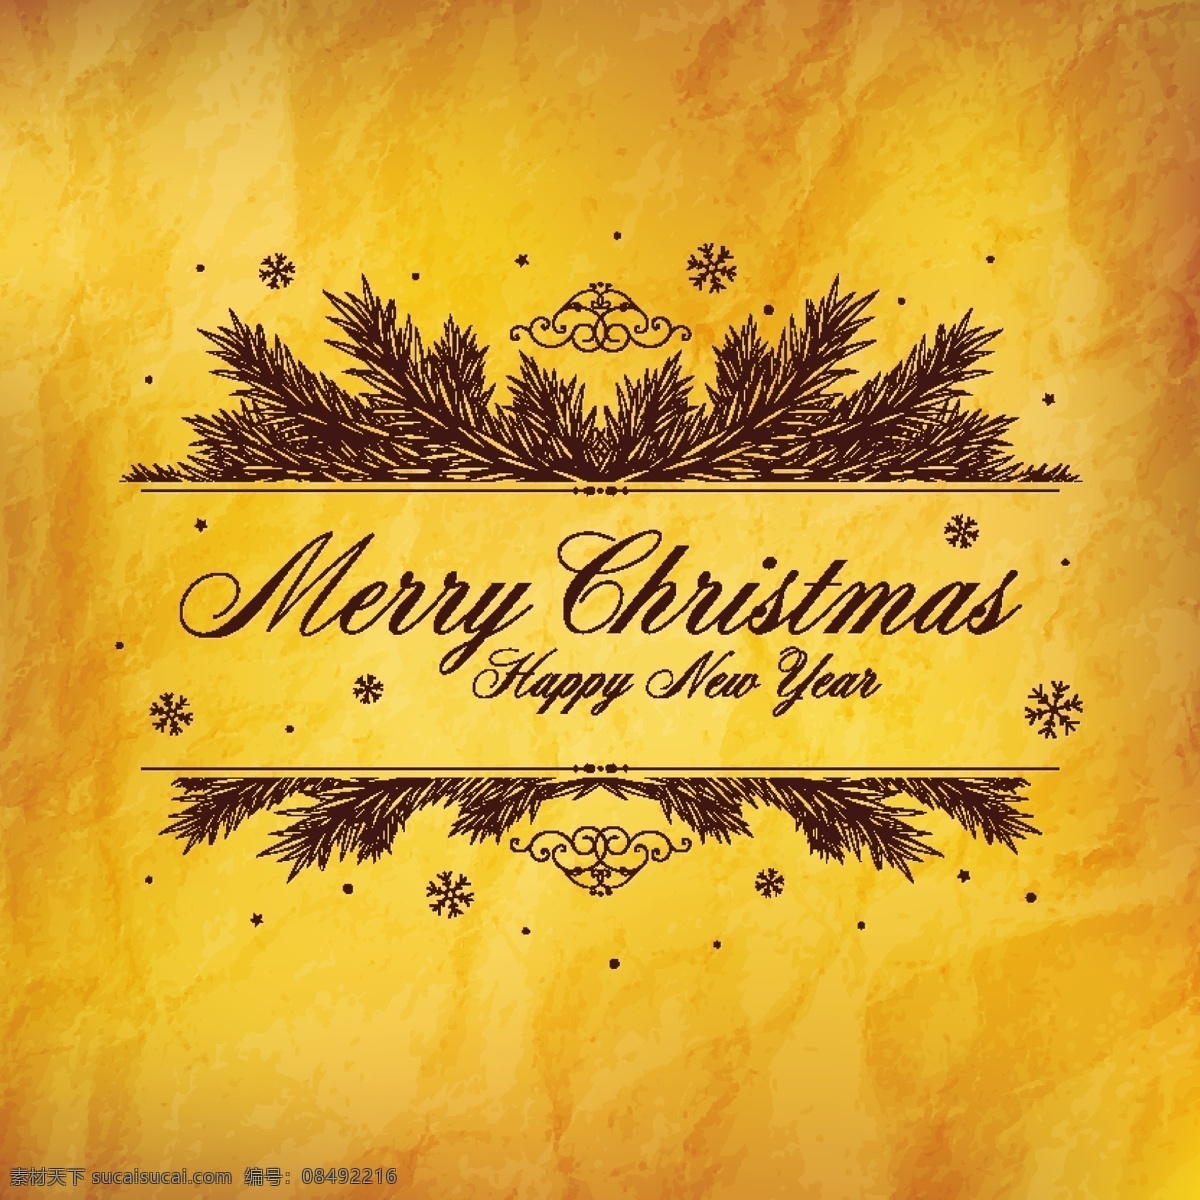 复古 黄色 纸张 圣诞贺卡 背景 圣诞节 手绘 松枝 雪花 节日素材